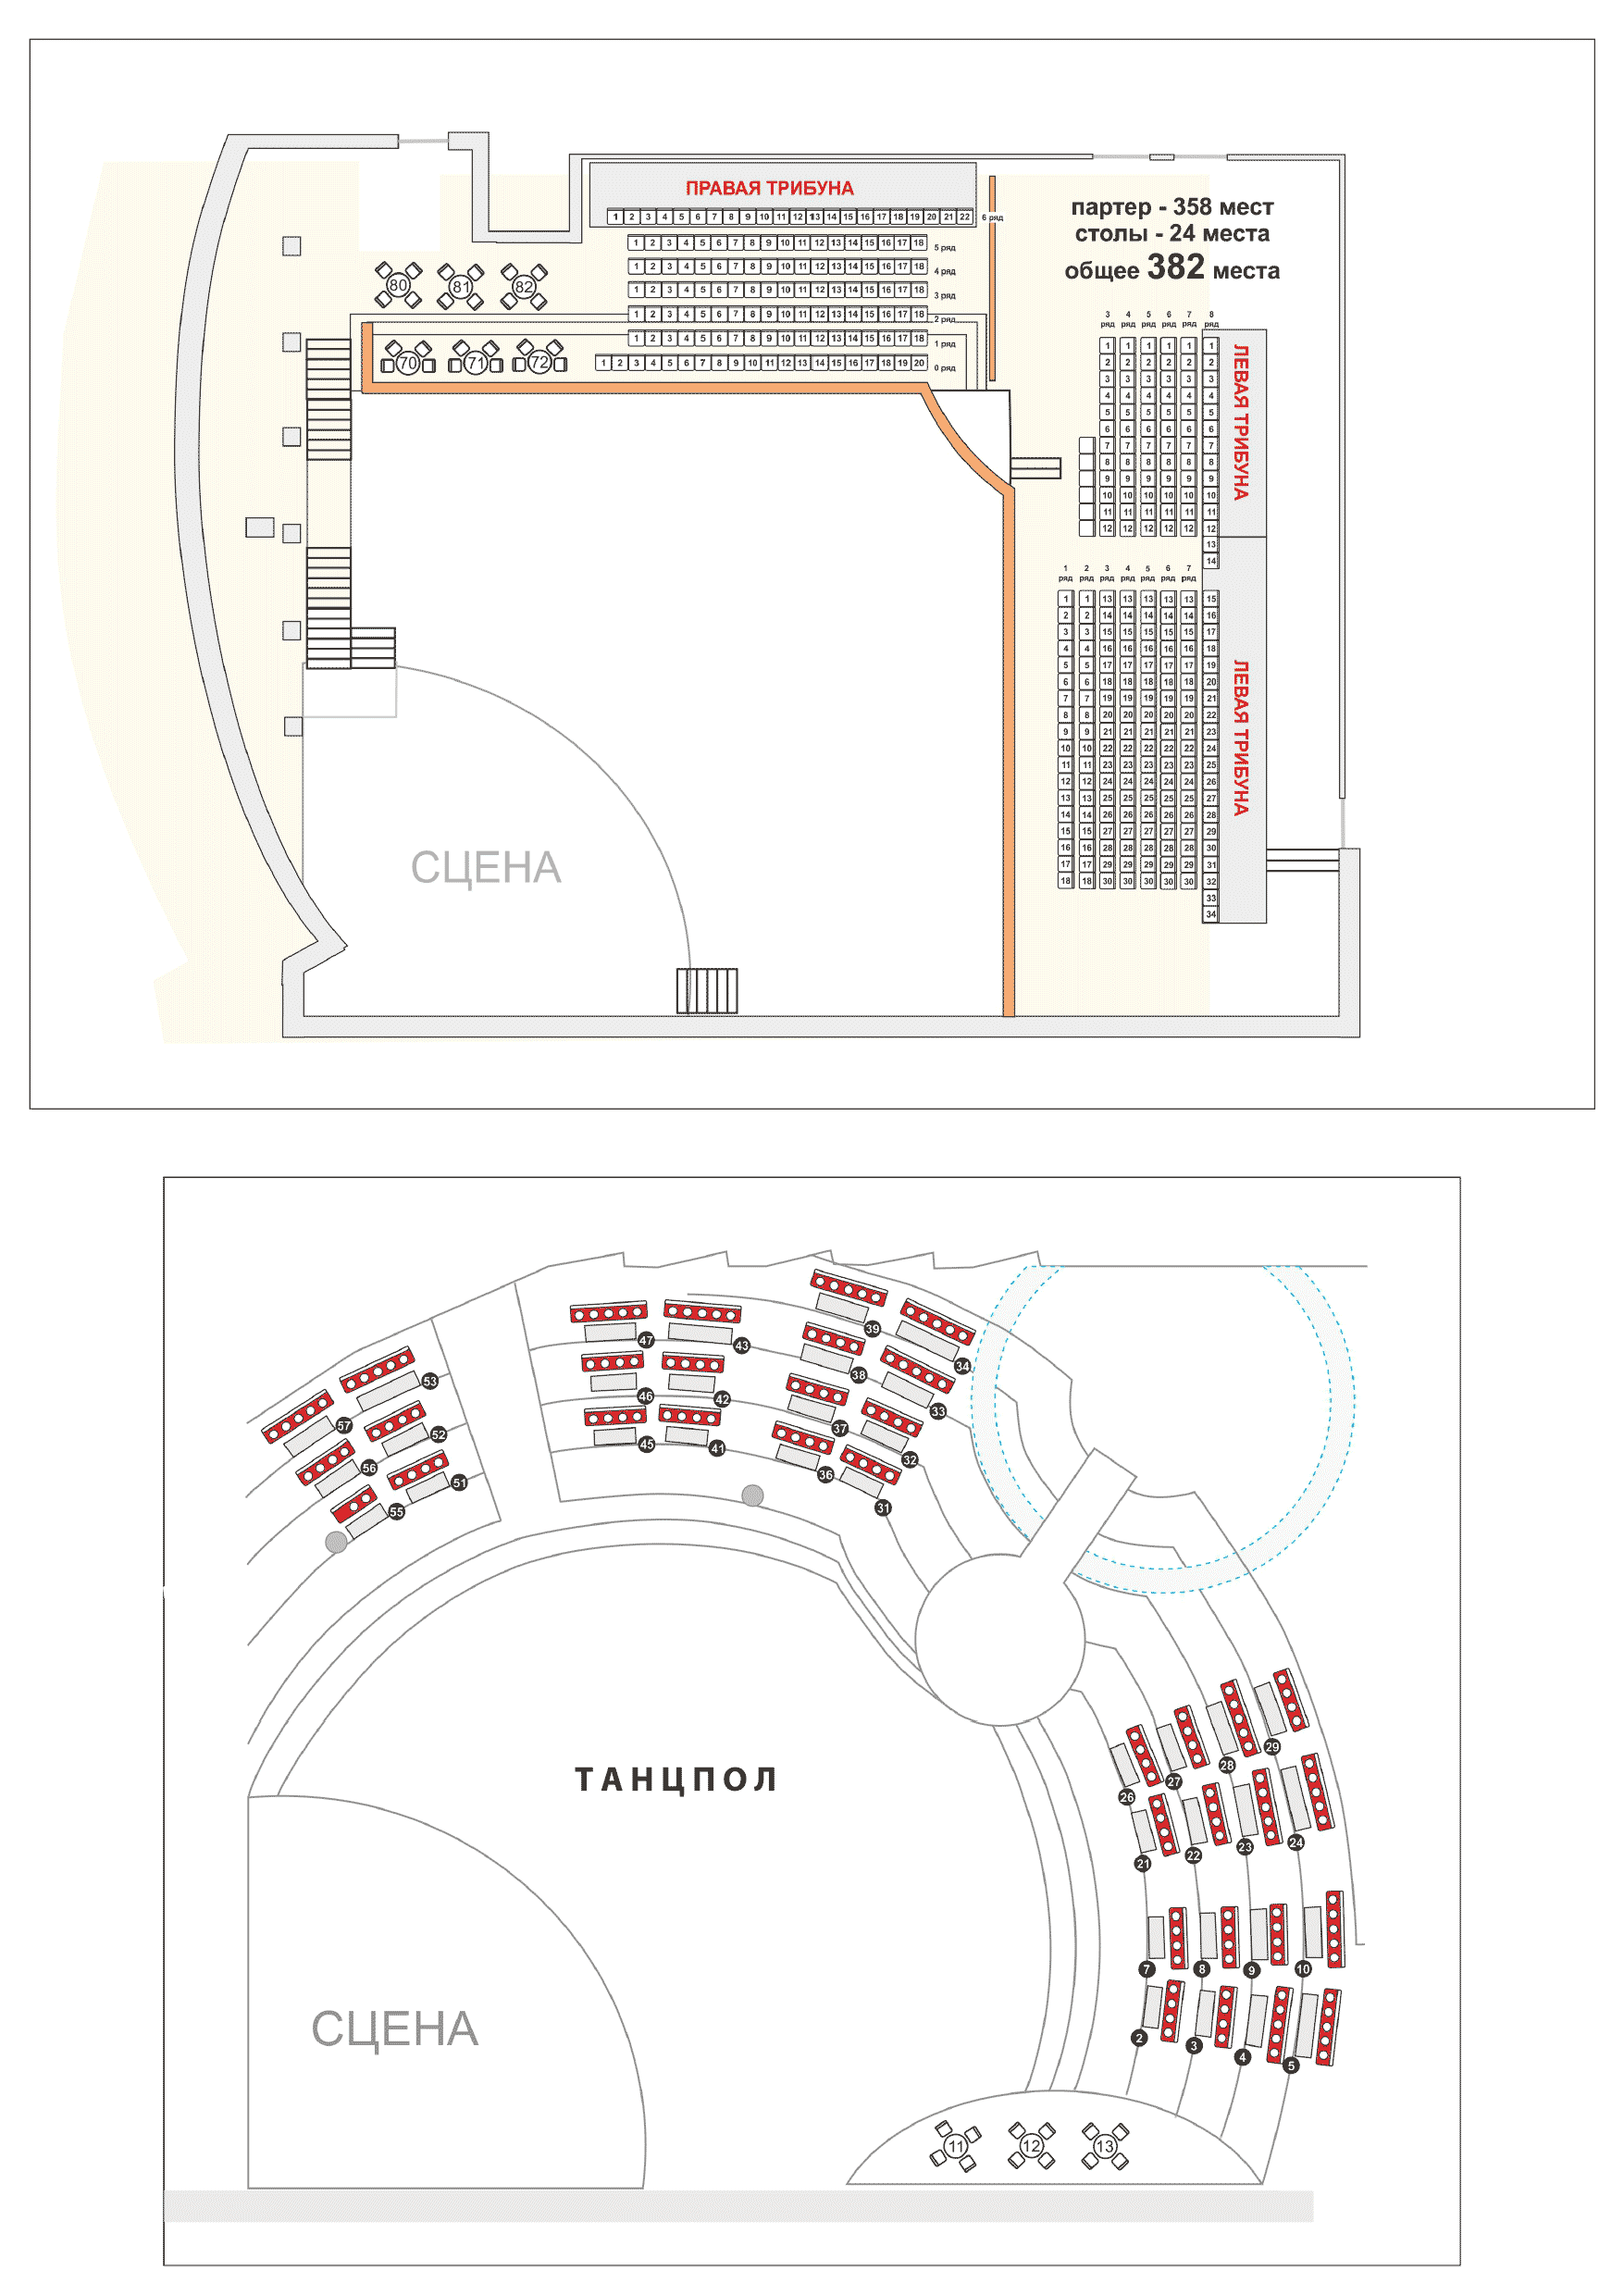 Схема зала